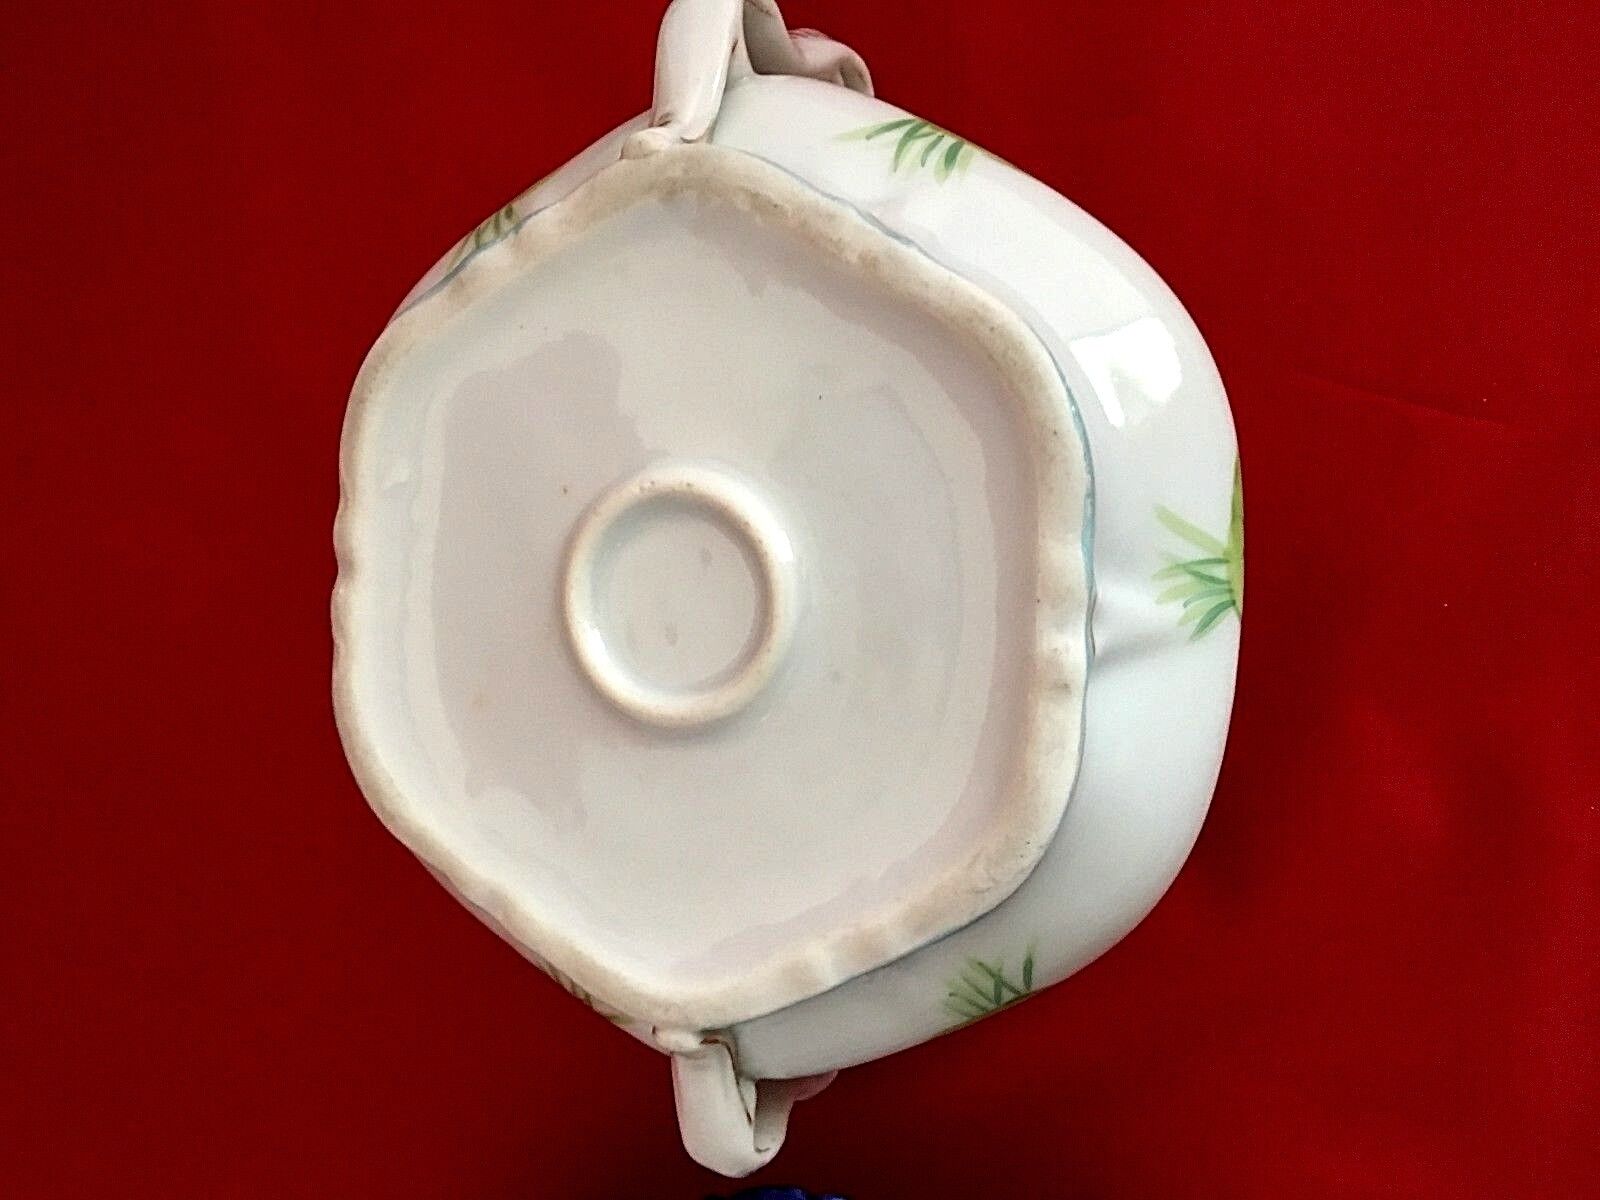 Antique Nippon Bowl Lidded with under plate cobalt edged floral violets design Без бренда - фотография #8